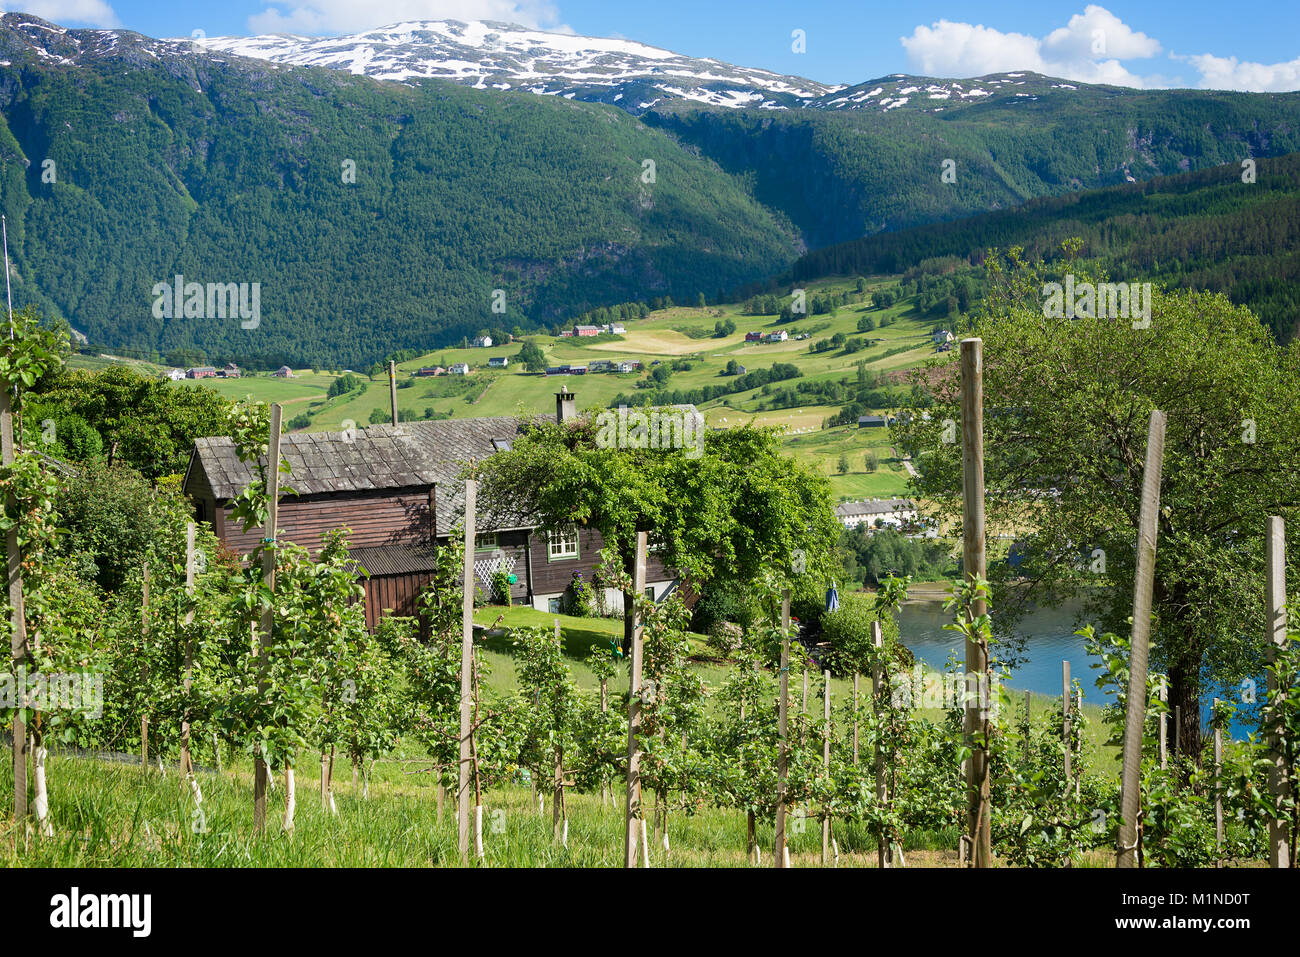 Obstbäume in einem Obstgarten auf den Hügeln rund um den Hardangerfjord mit Berge mit Schnee dahinter zeigt sich die Landschaft von Norwegen im Sommer. Stockfoto